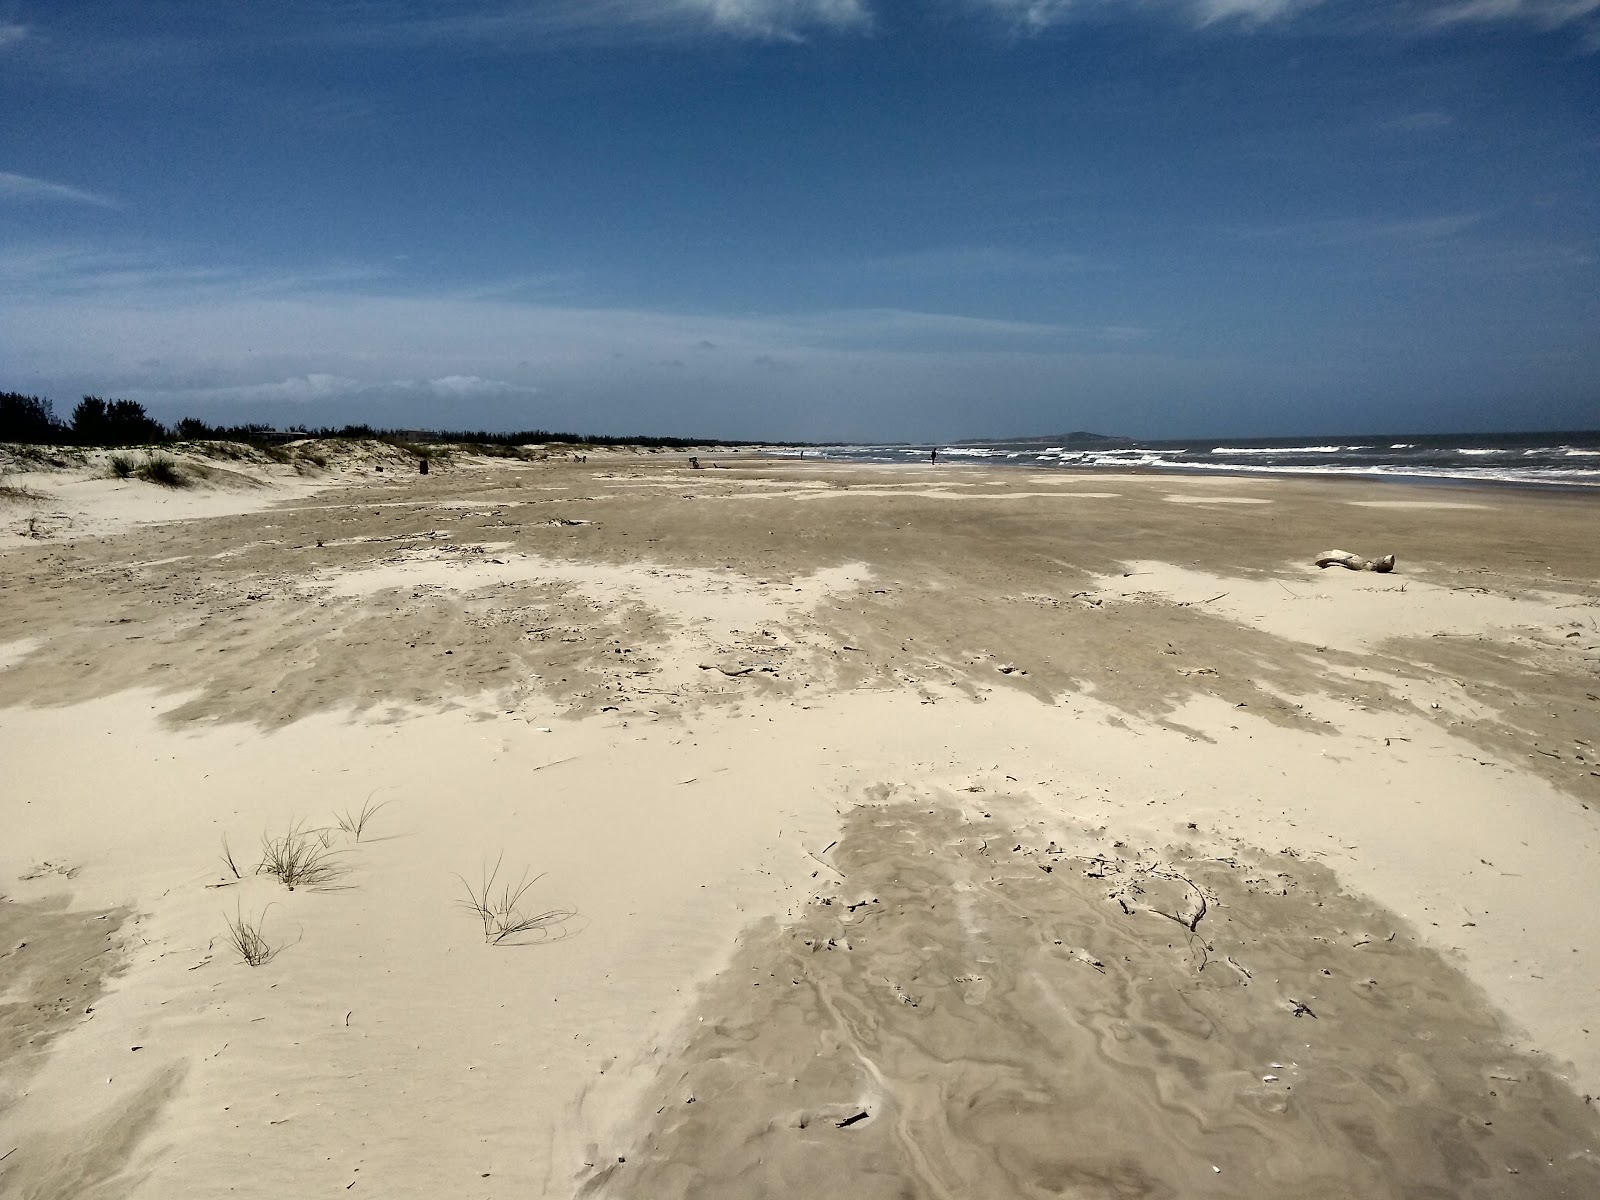 Foto af Praia do Iro - populært sted blandt afslapningskendere